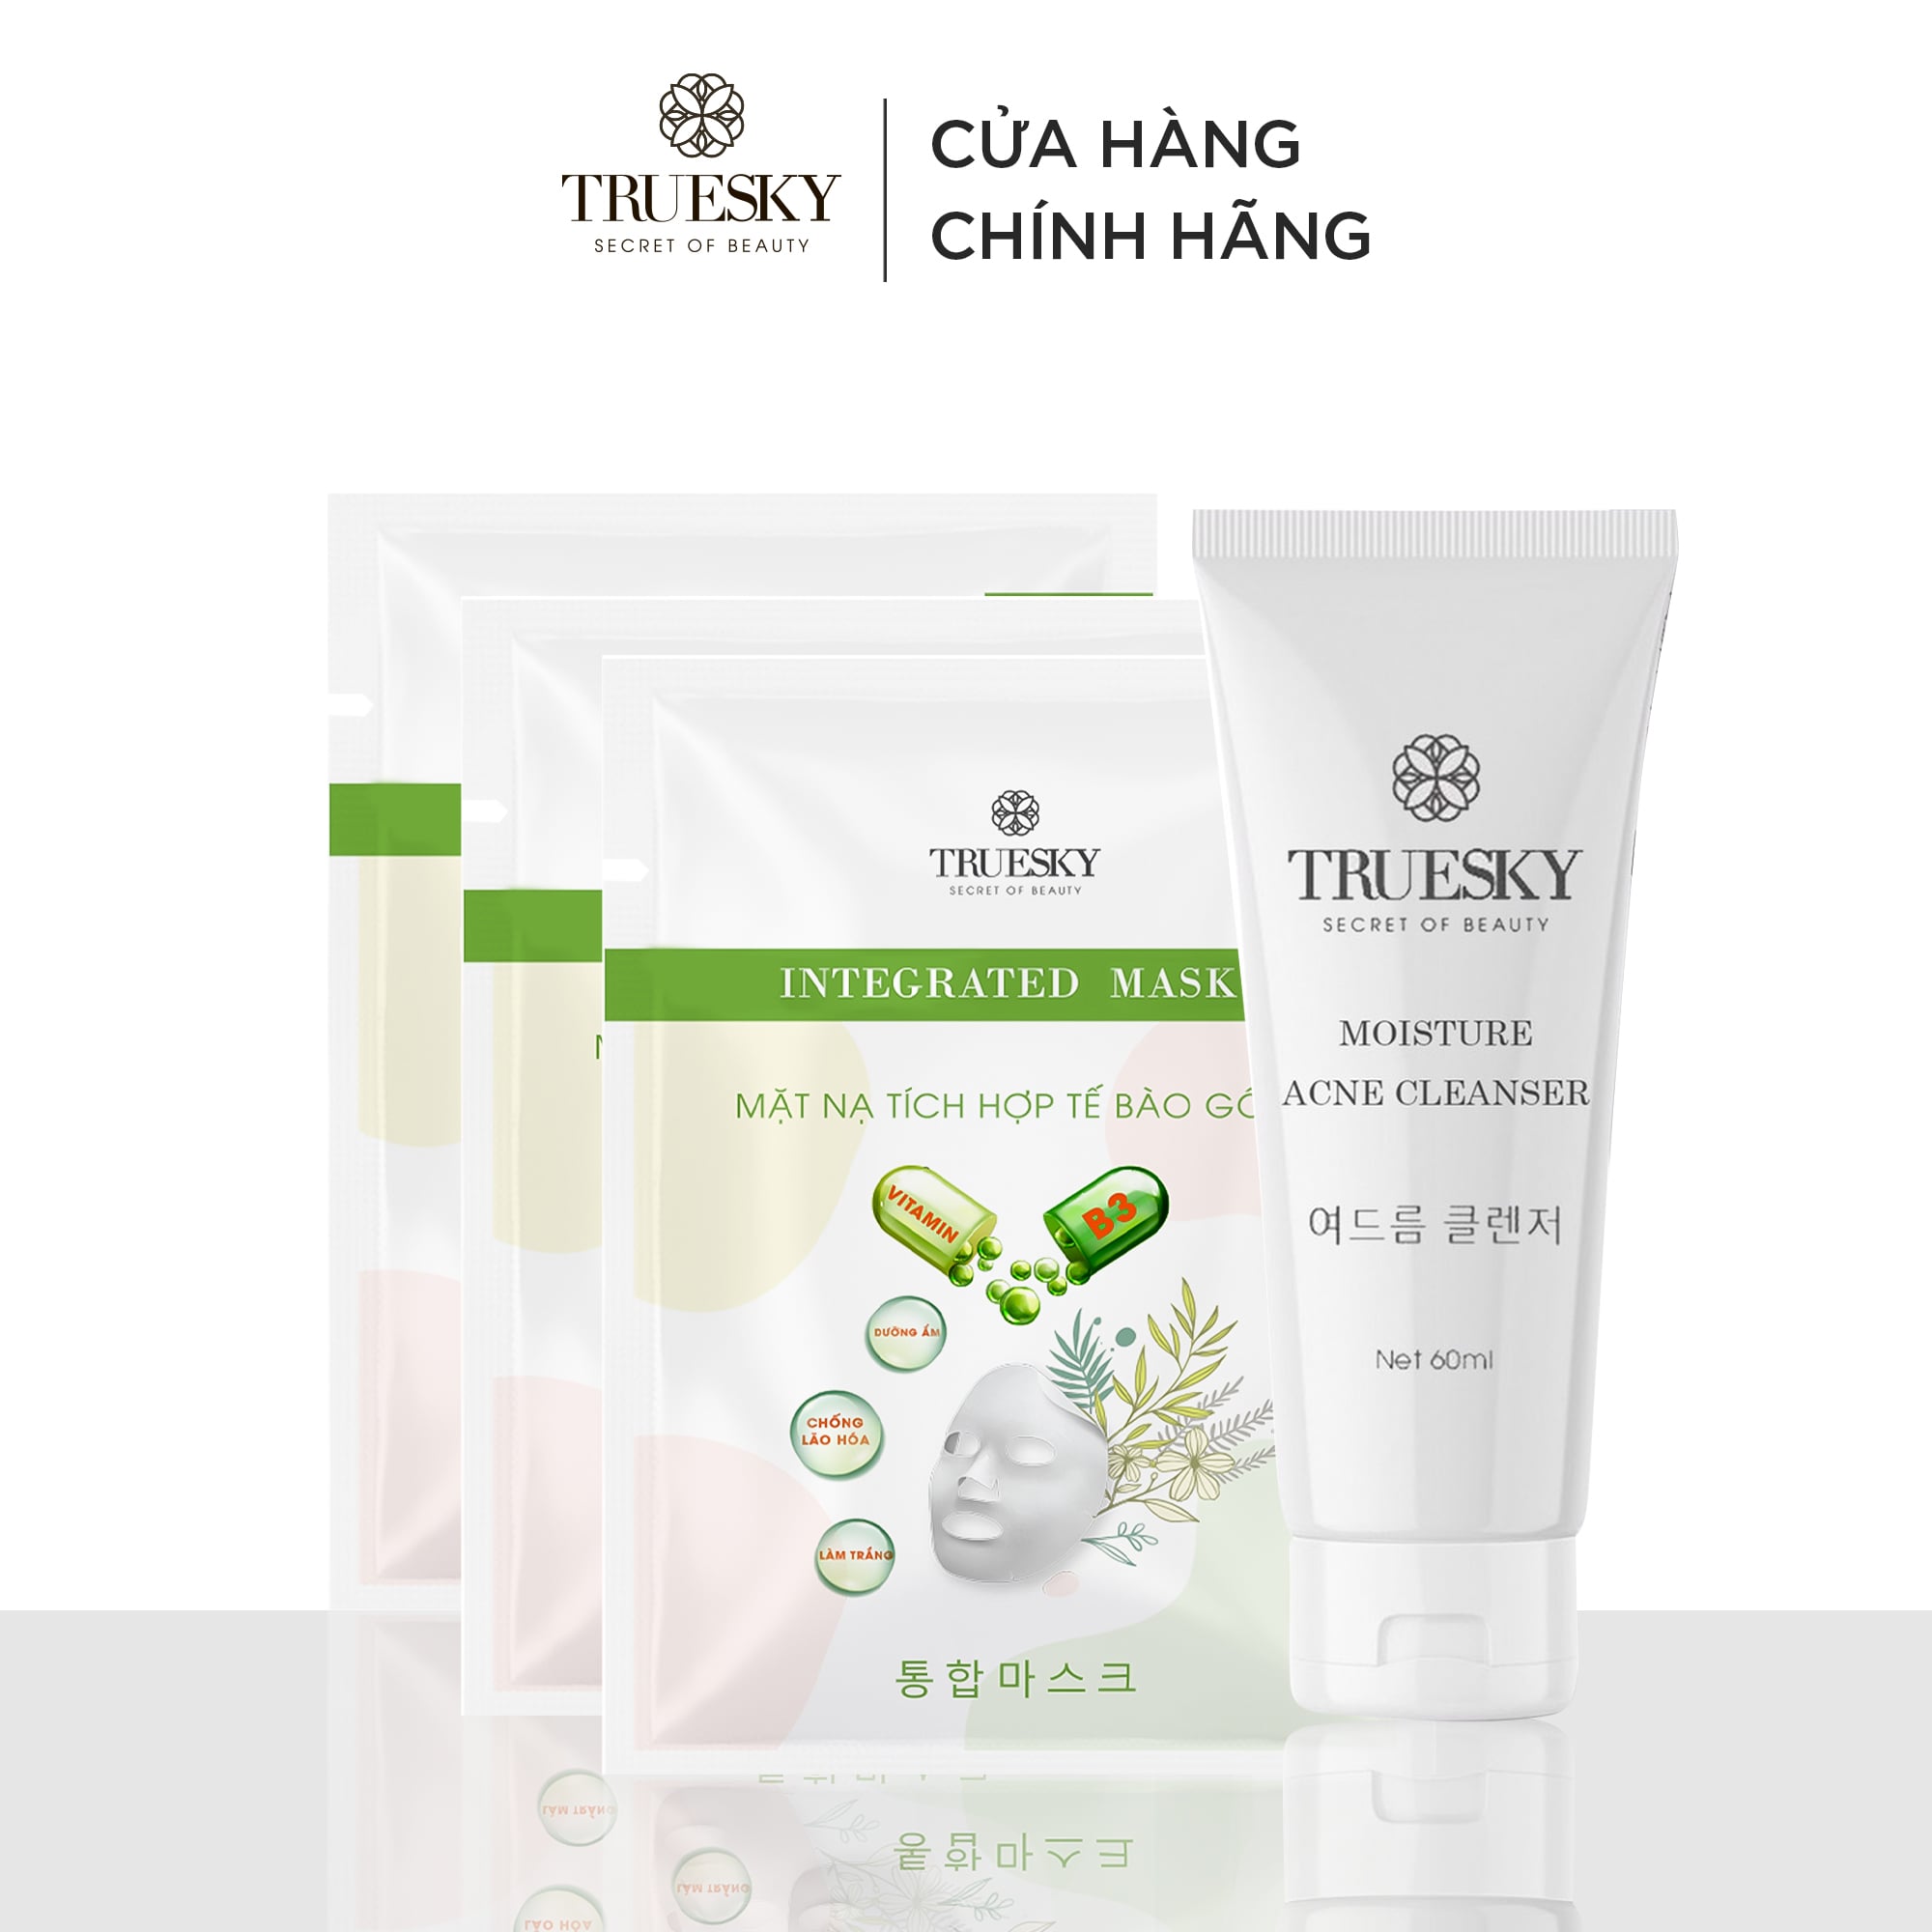 [HCM]Bộ sản phẩm giảm mụn và dưỡng da mặt Truesky M04 gồm 1 sữa rửa mặt ngừa mụn than hoạt tính 60ml & 3 miếng mặt nạ dưỡng trắng da mặt